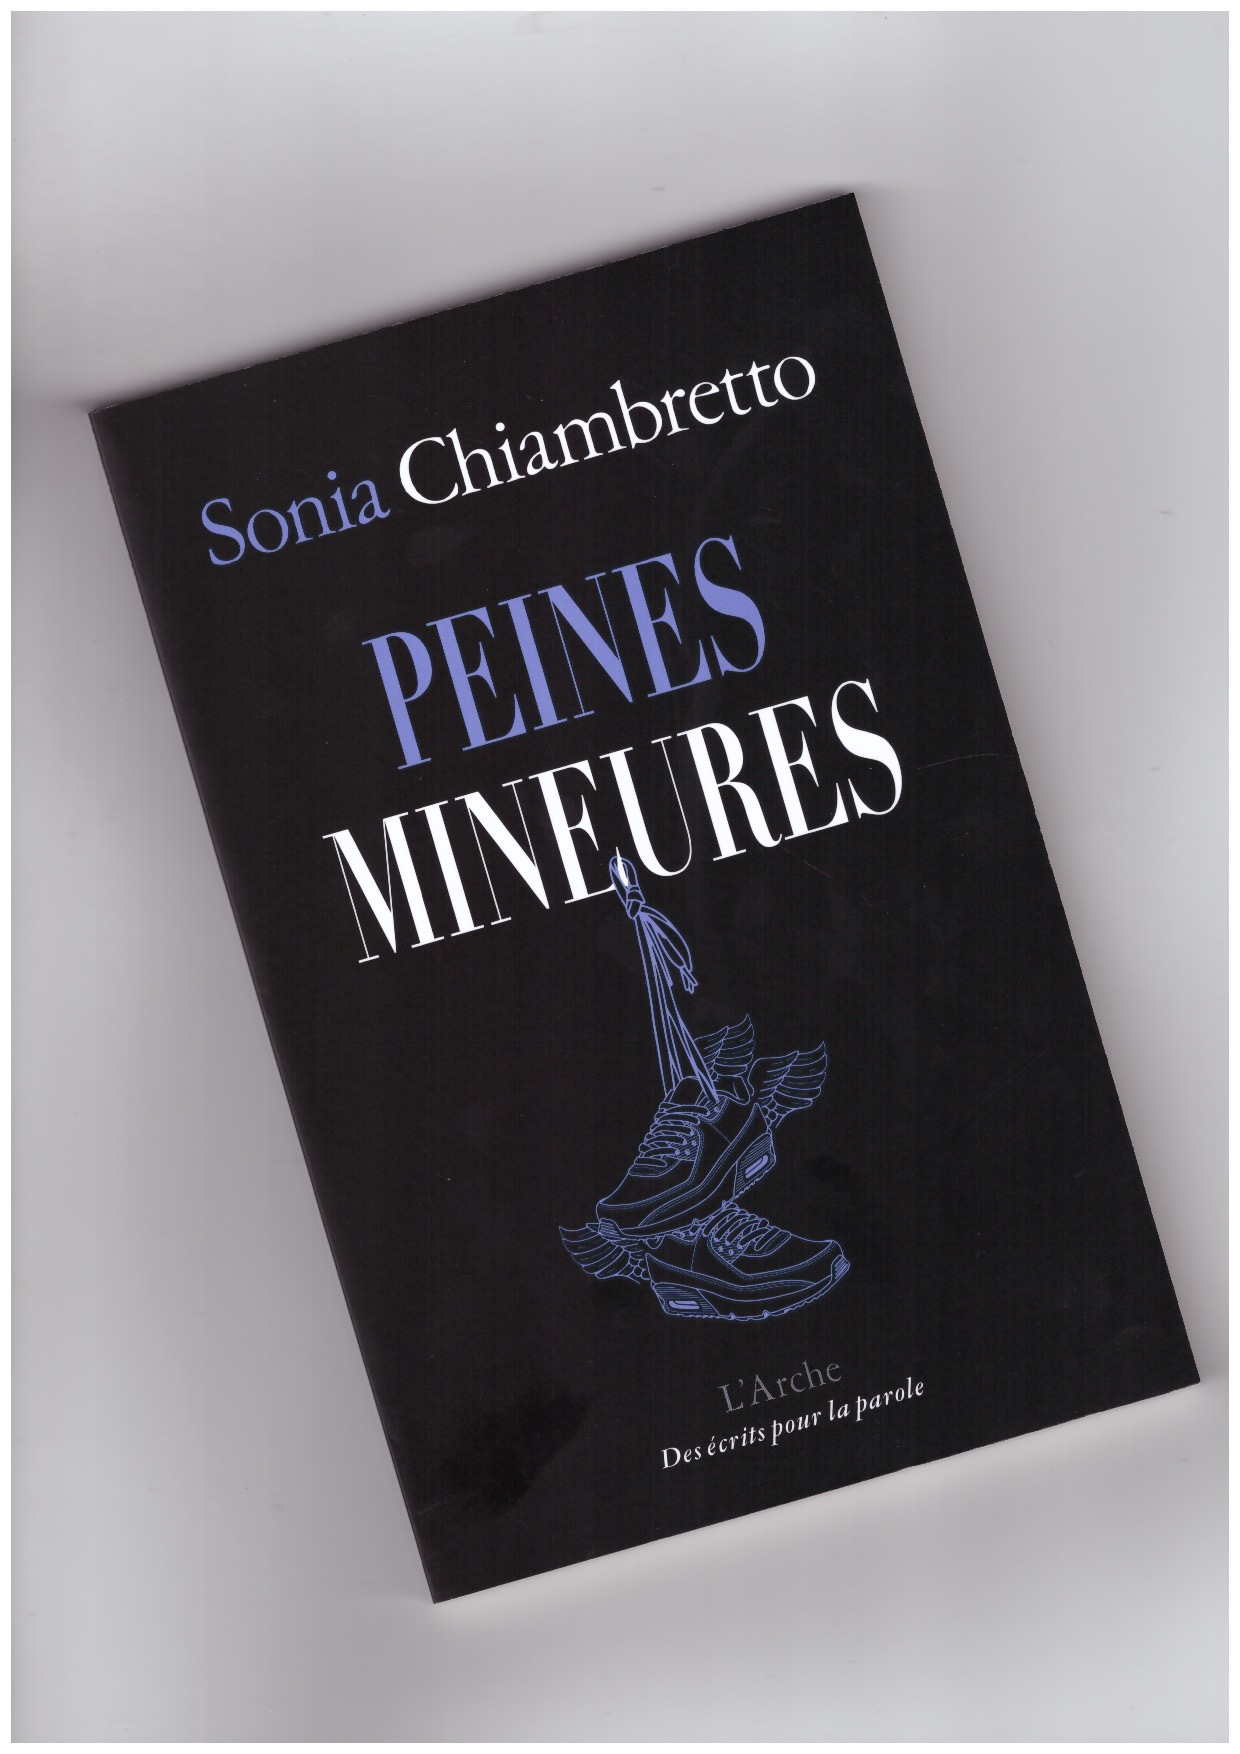 CHIAMBRETTO, Sonia - Peines Mineures